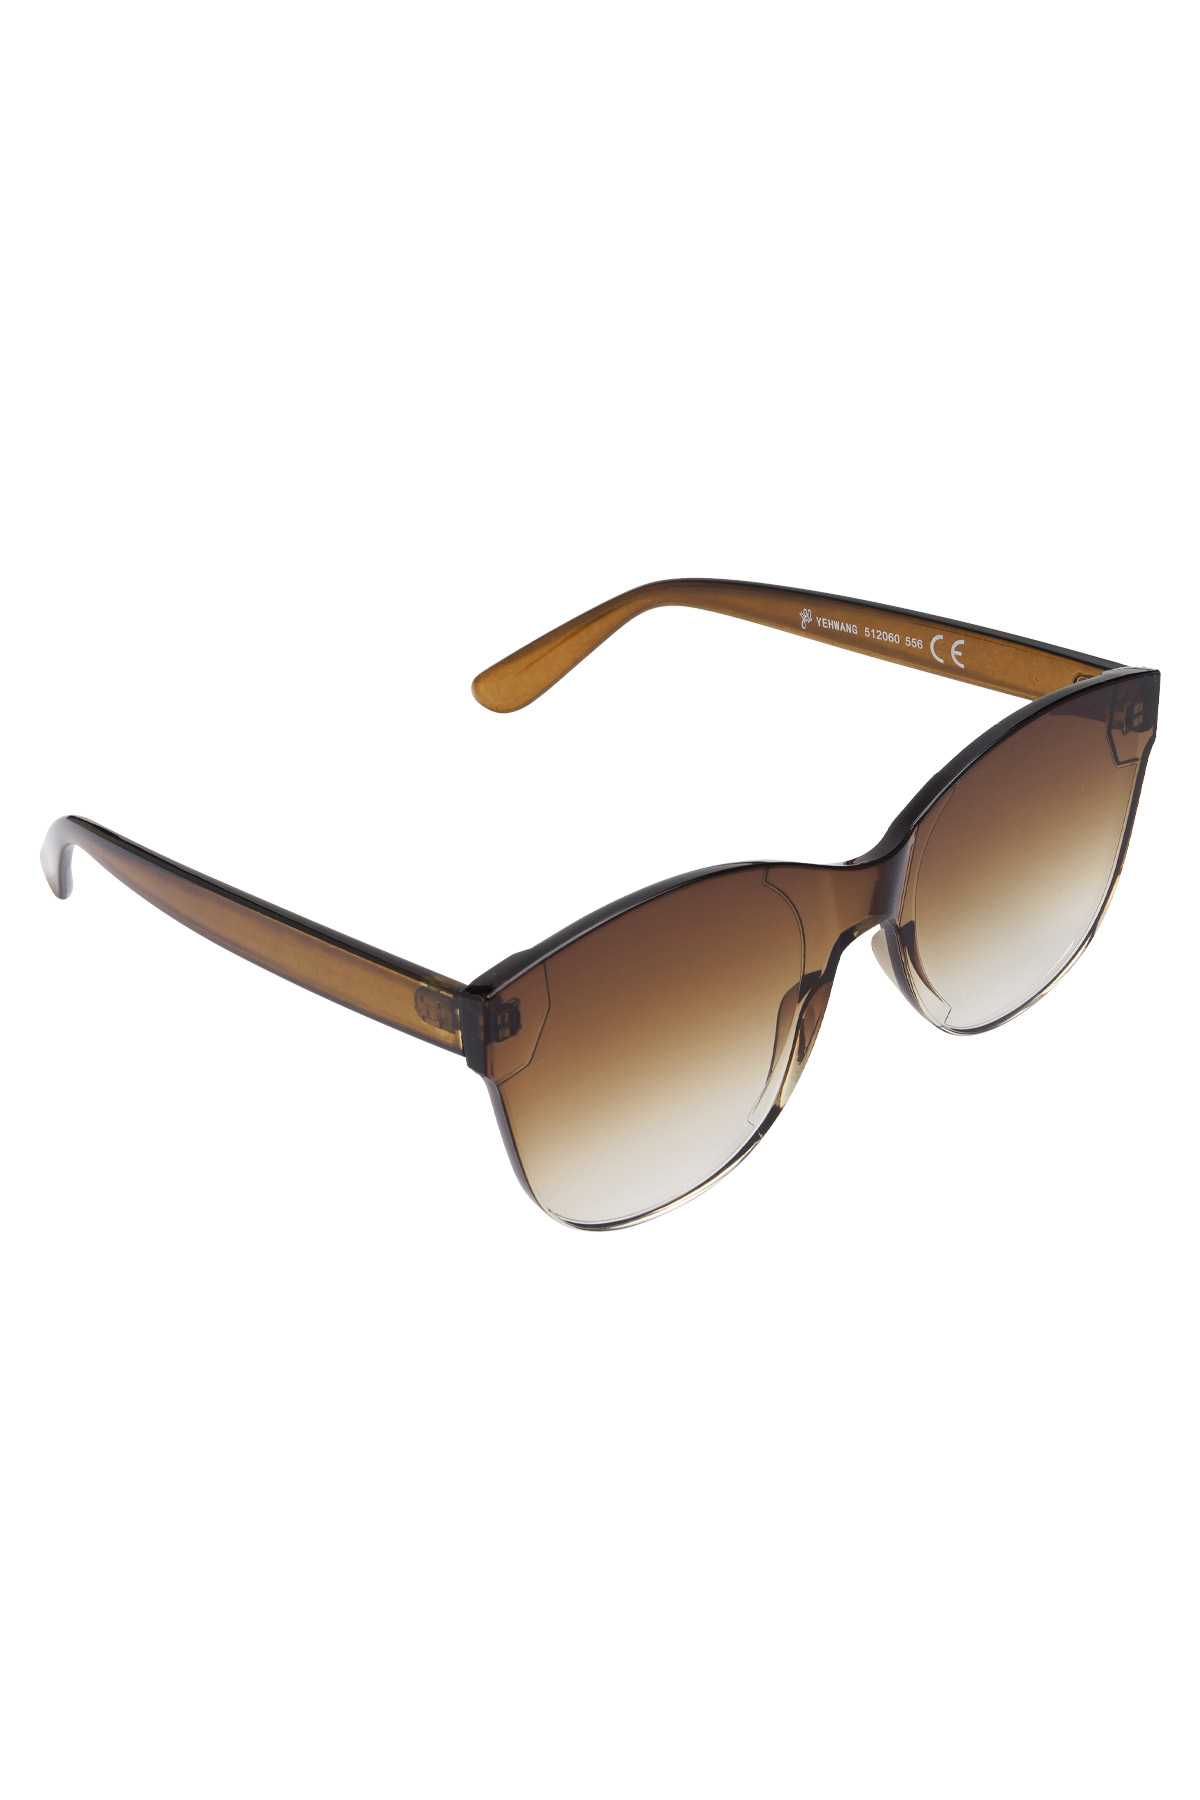 Einfarbige trendige Sonnenbrille - braun h5 